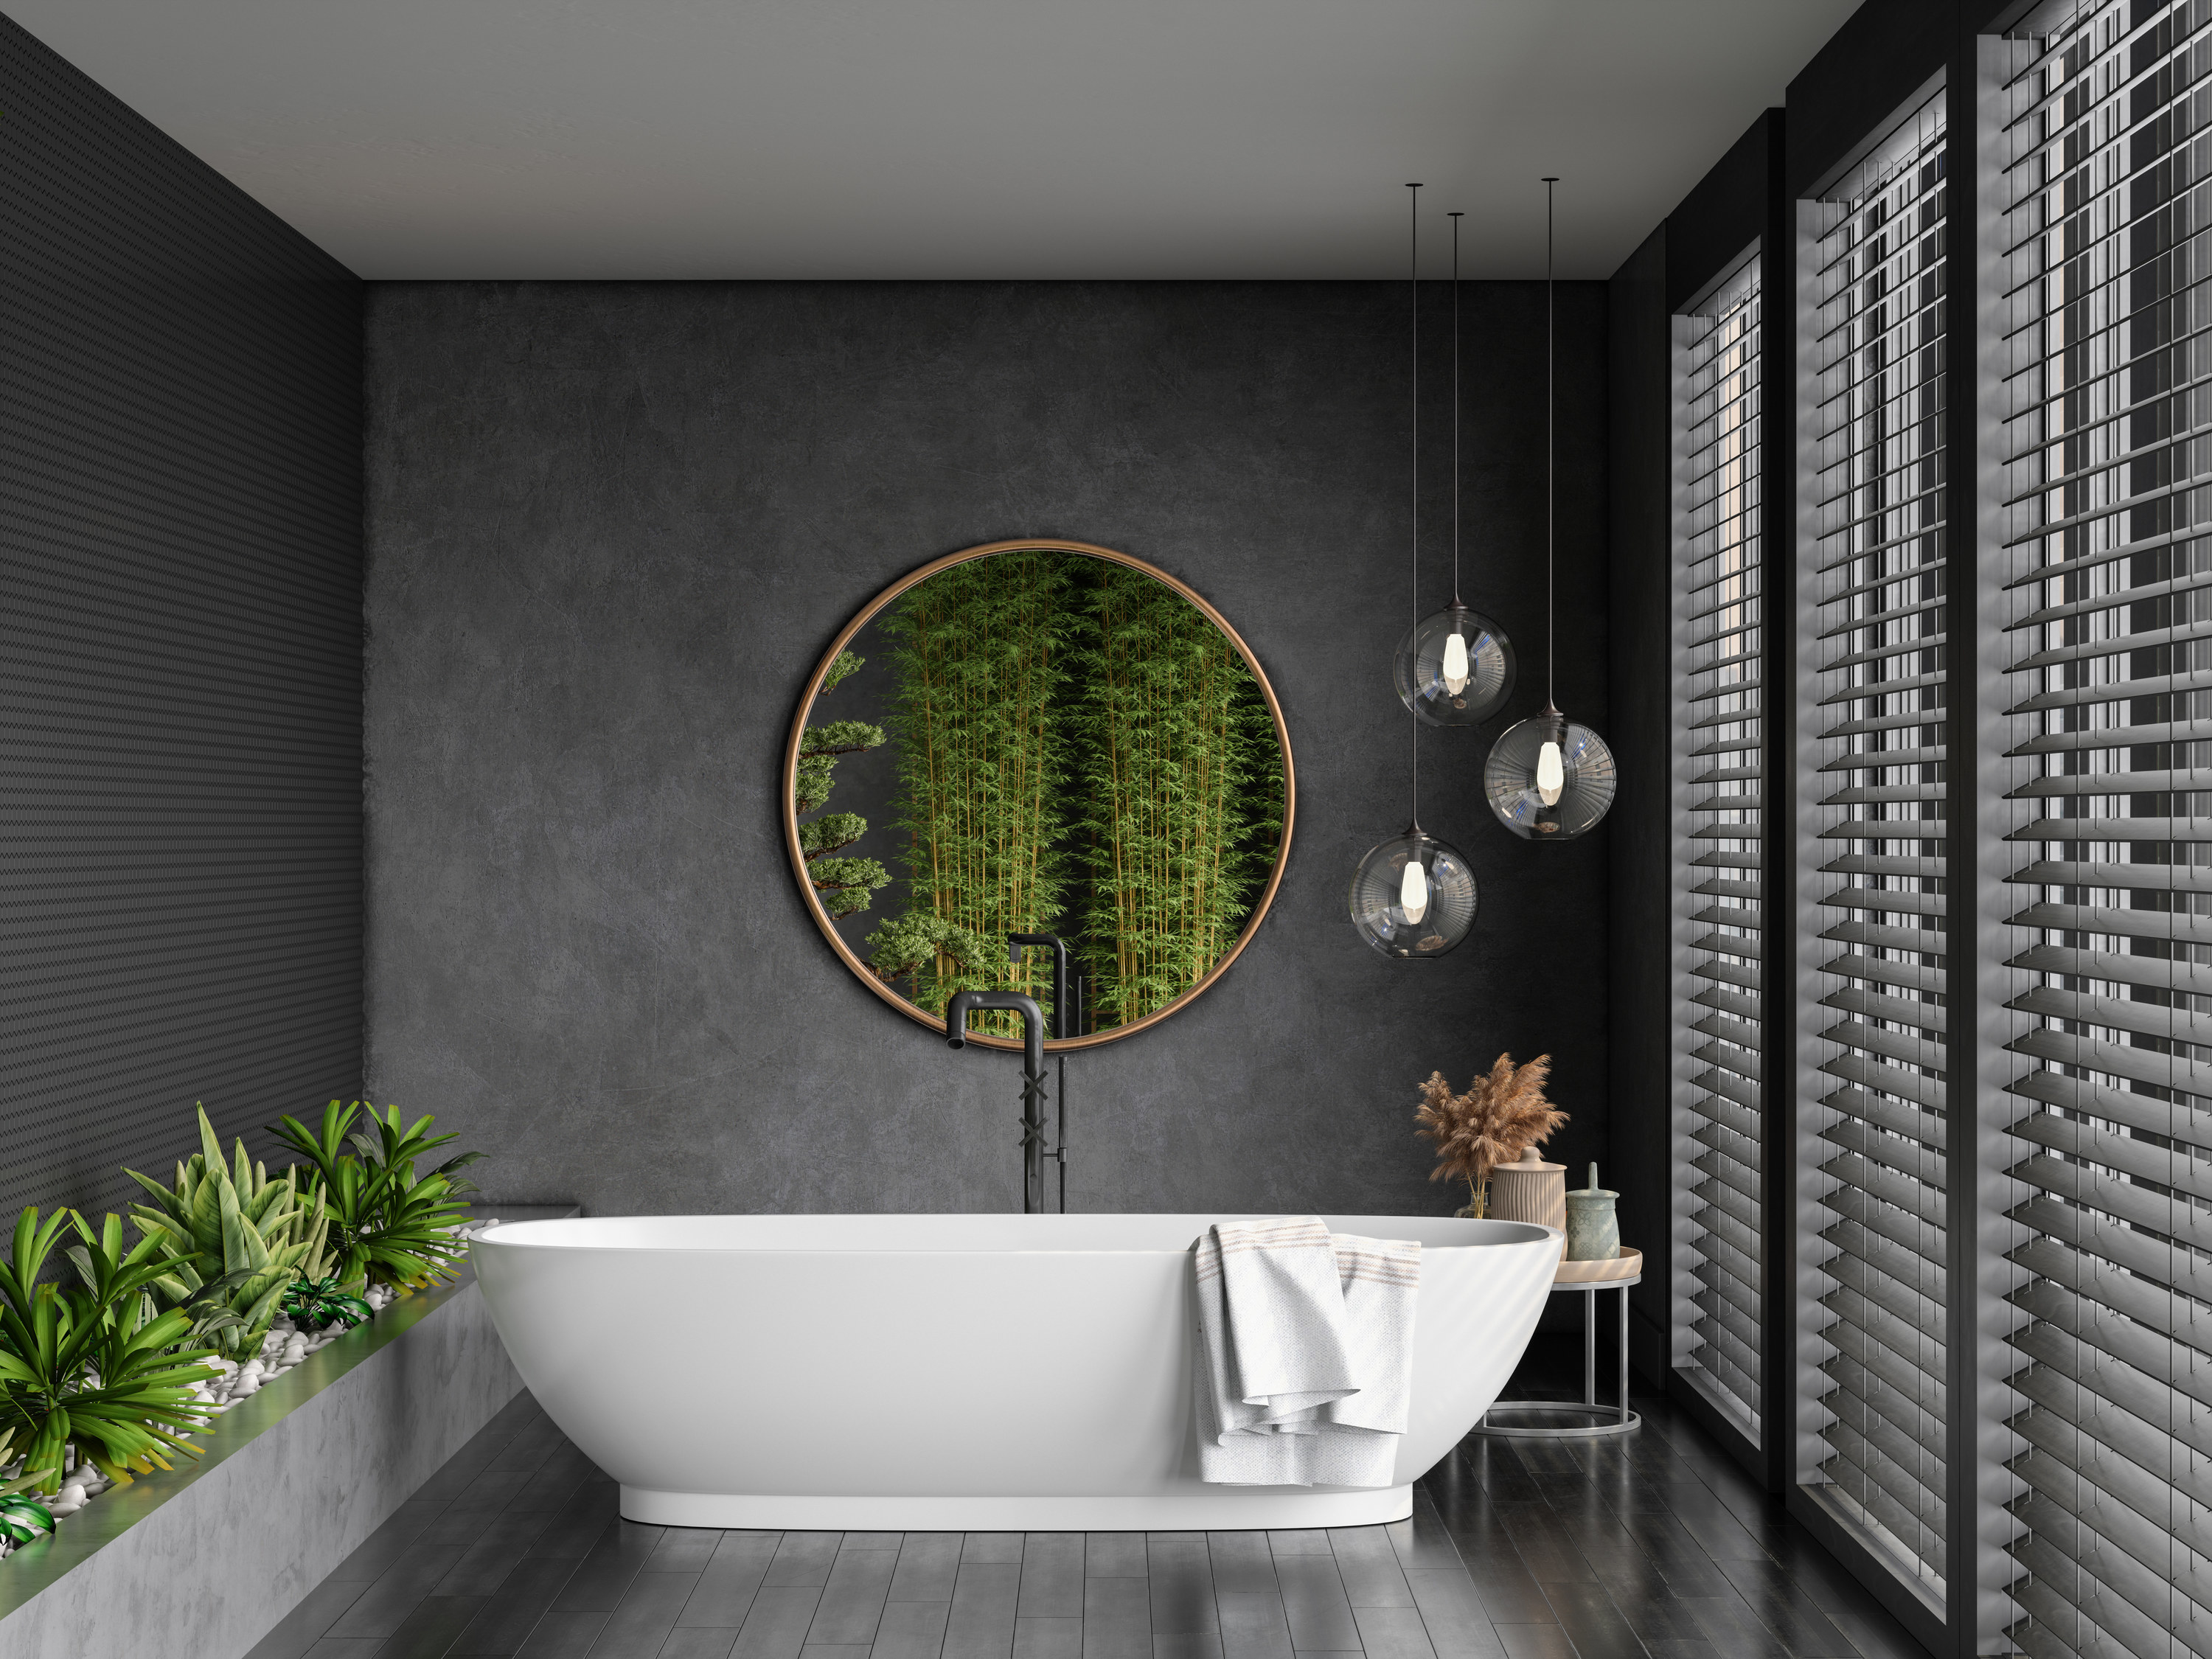 Big bathtub in a modern bathroom decorated with plants